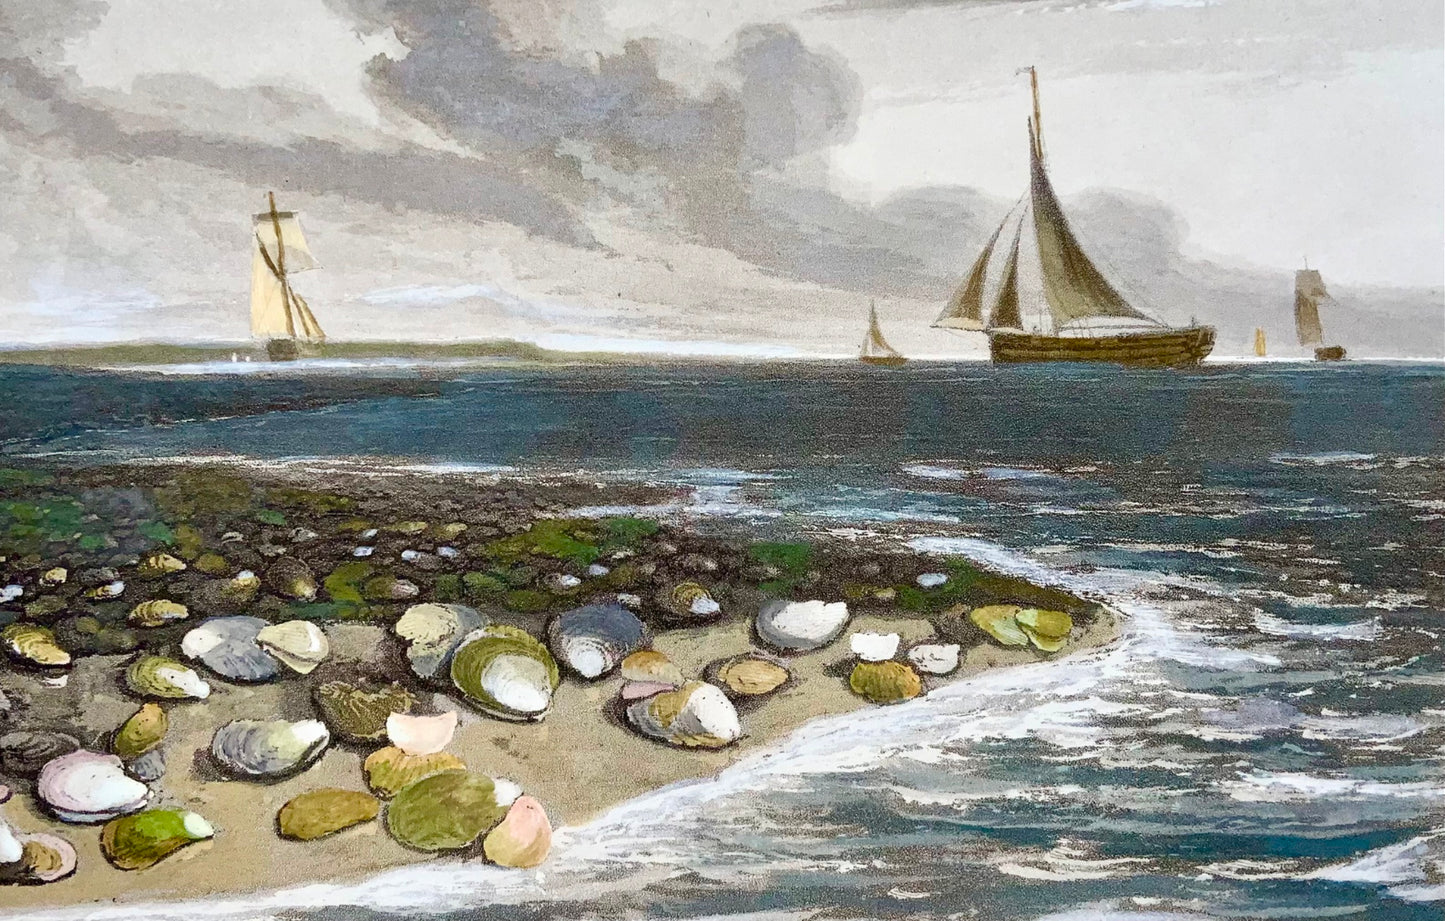 1809 William Daniell, Ostriche, marine, acquatinta colorata a mano, acquatica